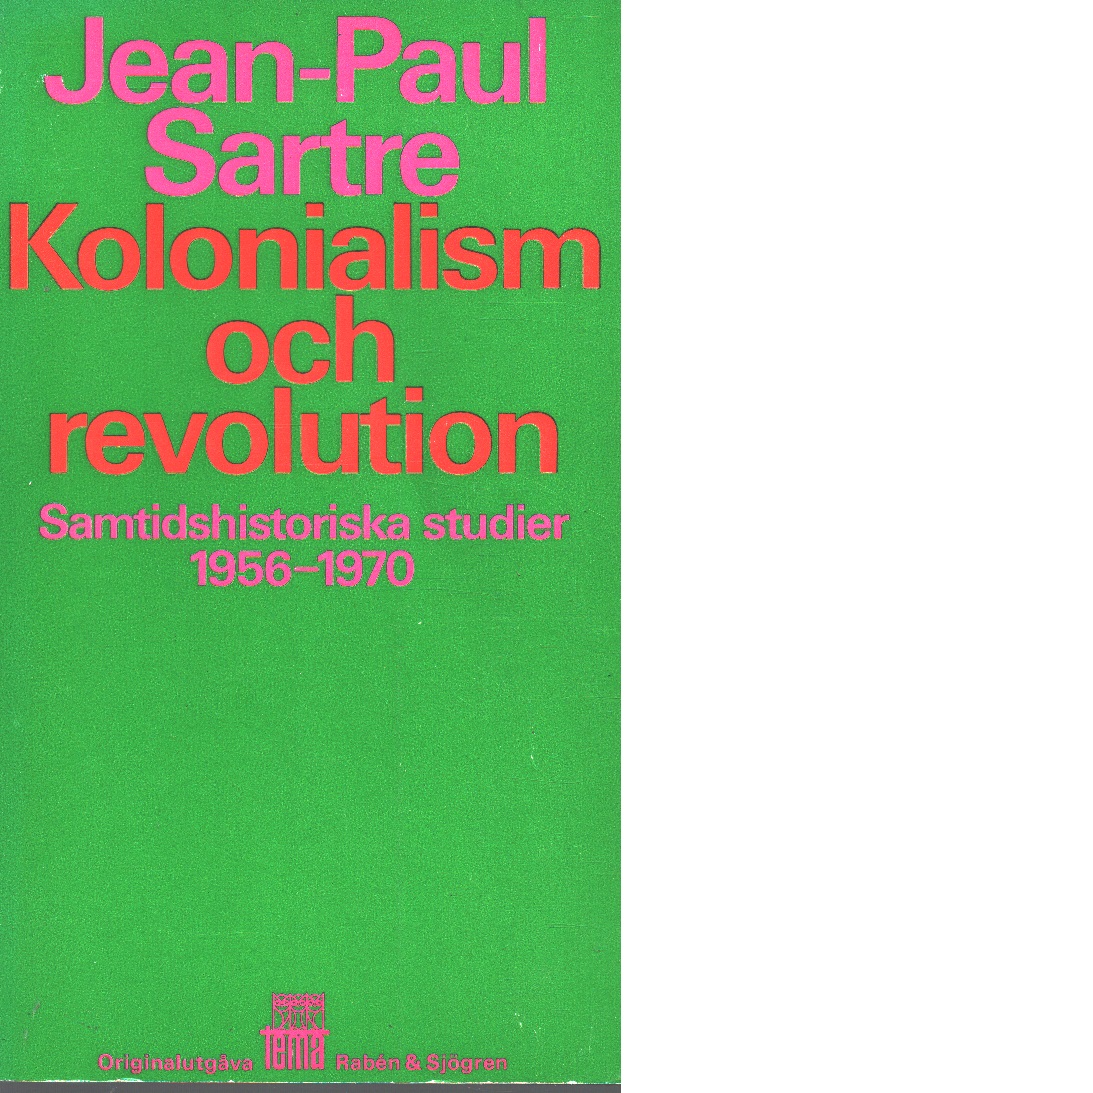 Kolonialism och revolution : samtidshistoriska studier 1956-1970 - Sartre, Jean-paul